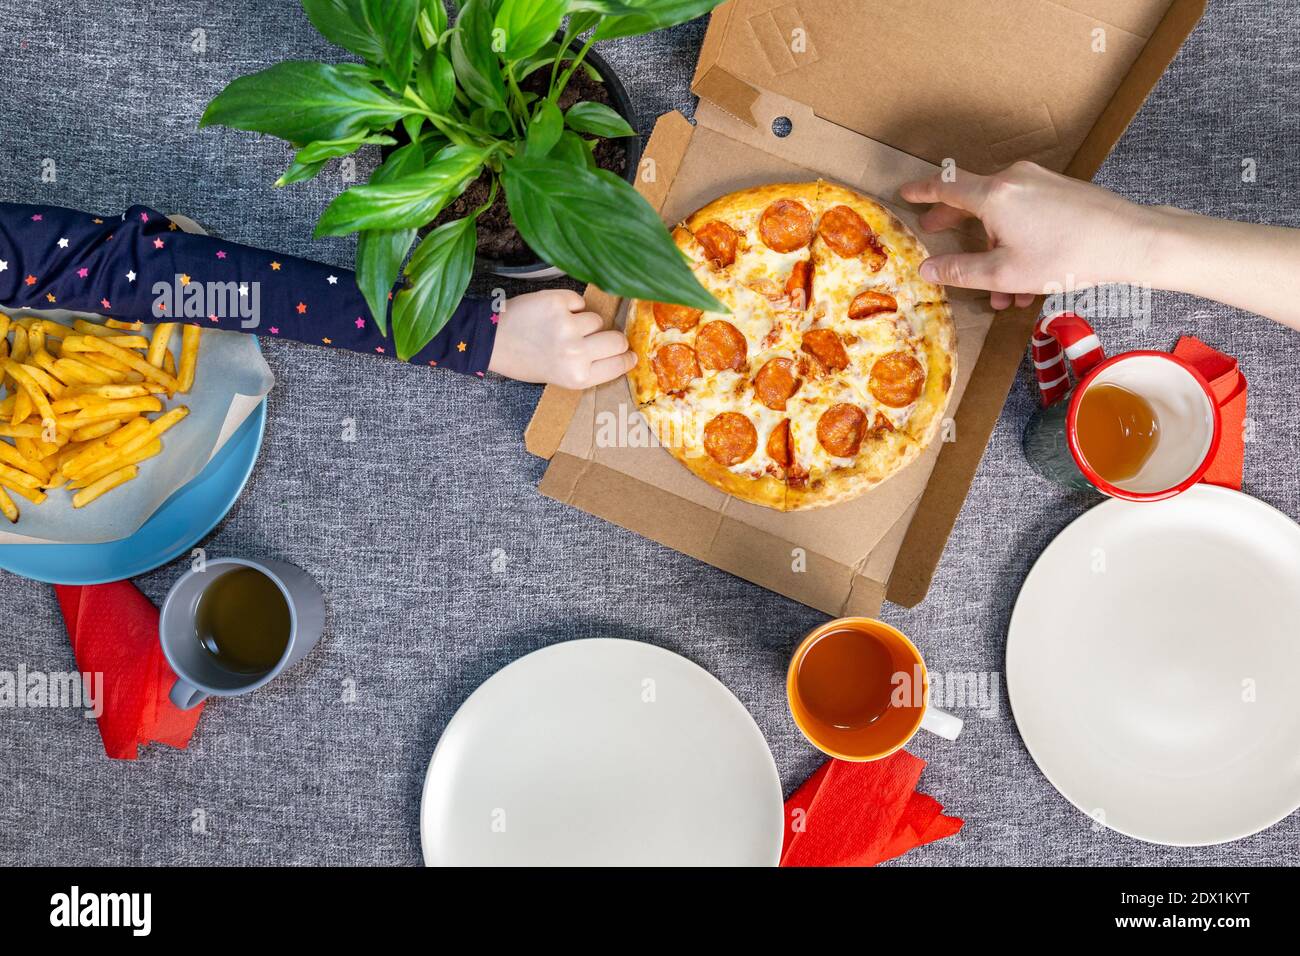 Petite pizza poivrée dans une boîte sur une table, vue de dessus, déjeuner en famille. Banque D'Images